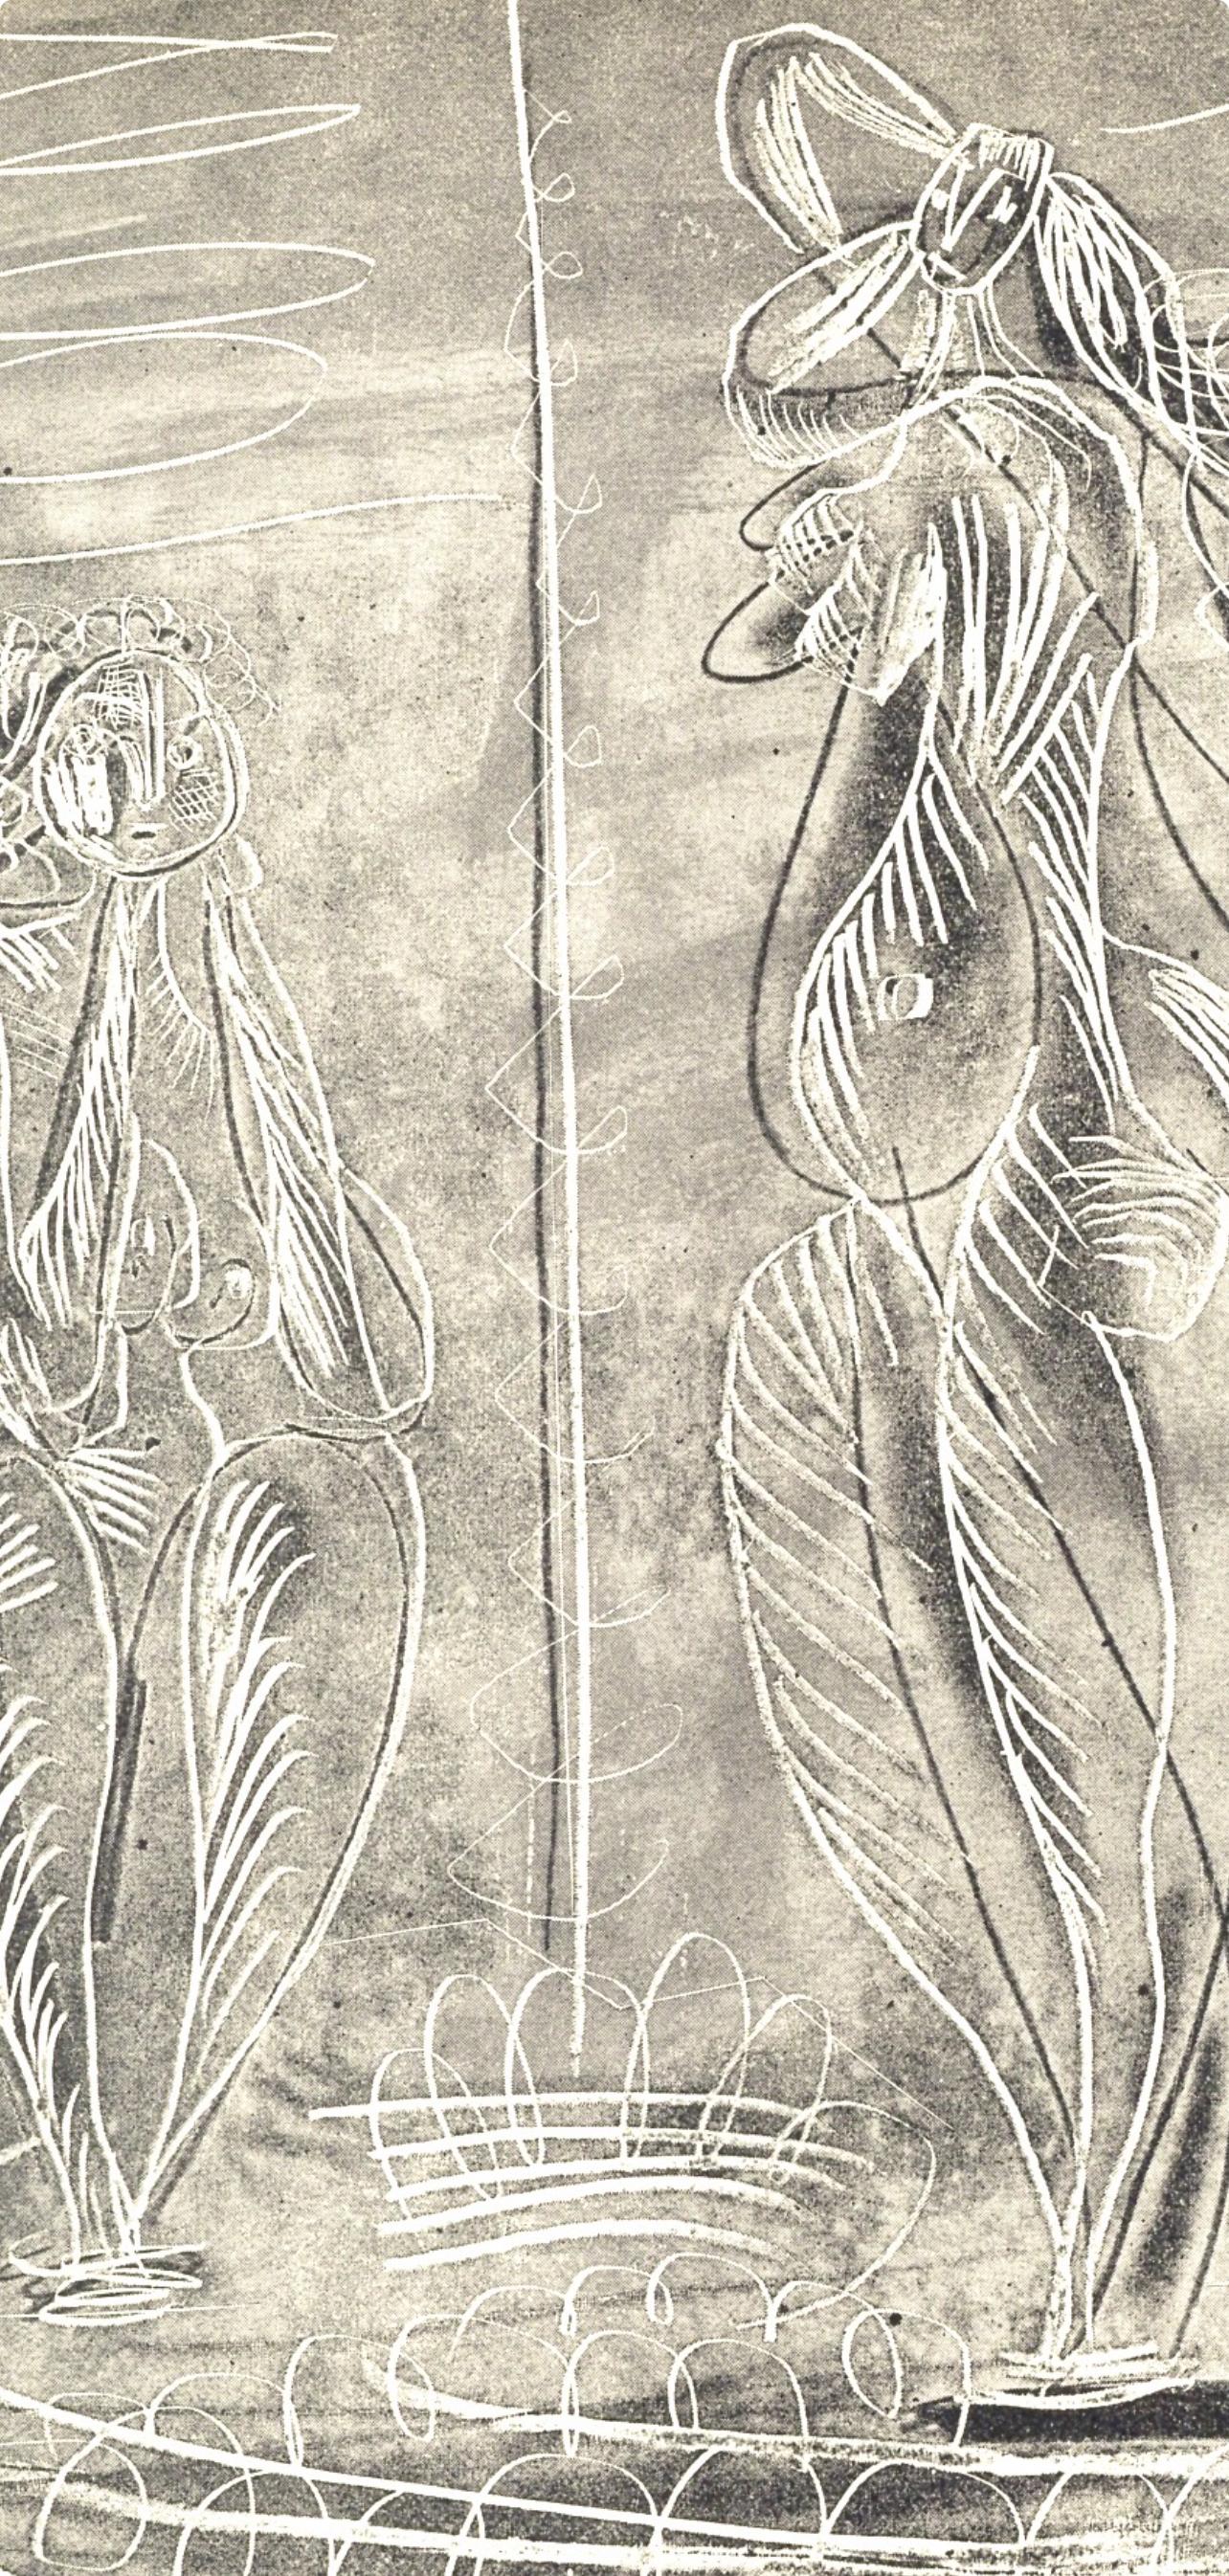 Picasso, Deux femmes, La Chèvre-Feuille (after) - Modern Print by Pablo Picasso